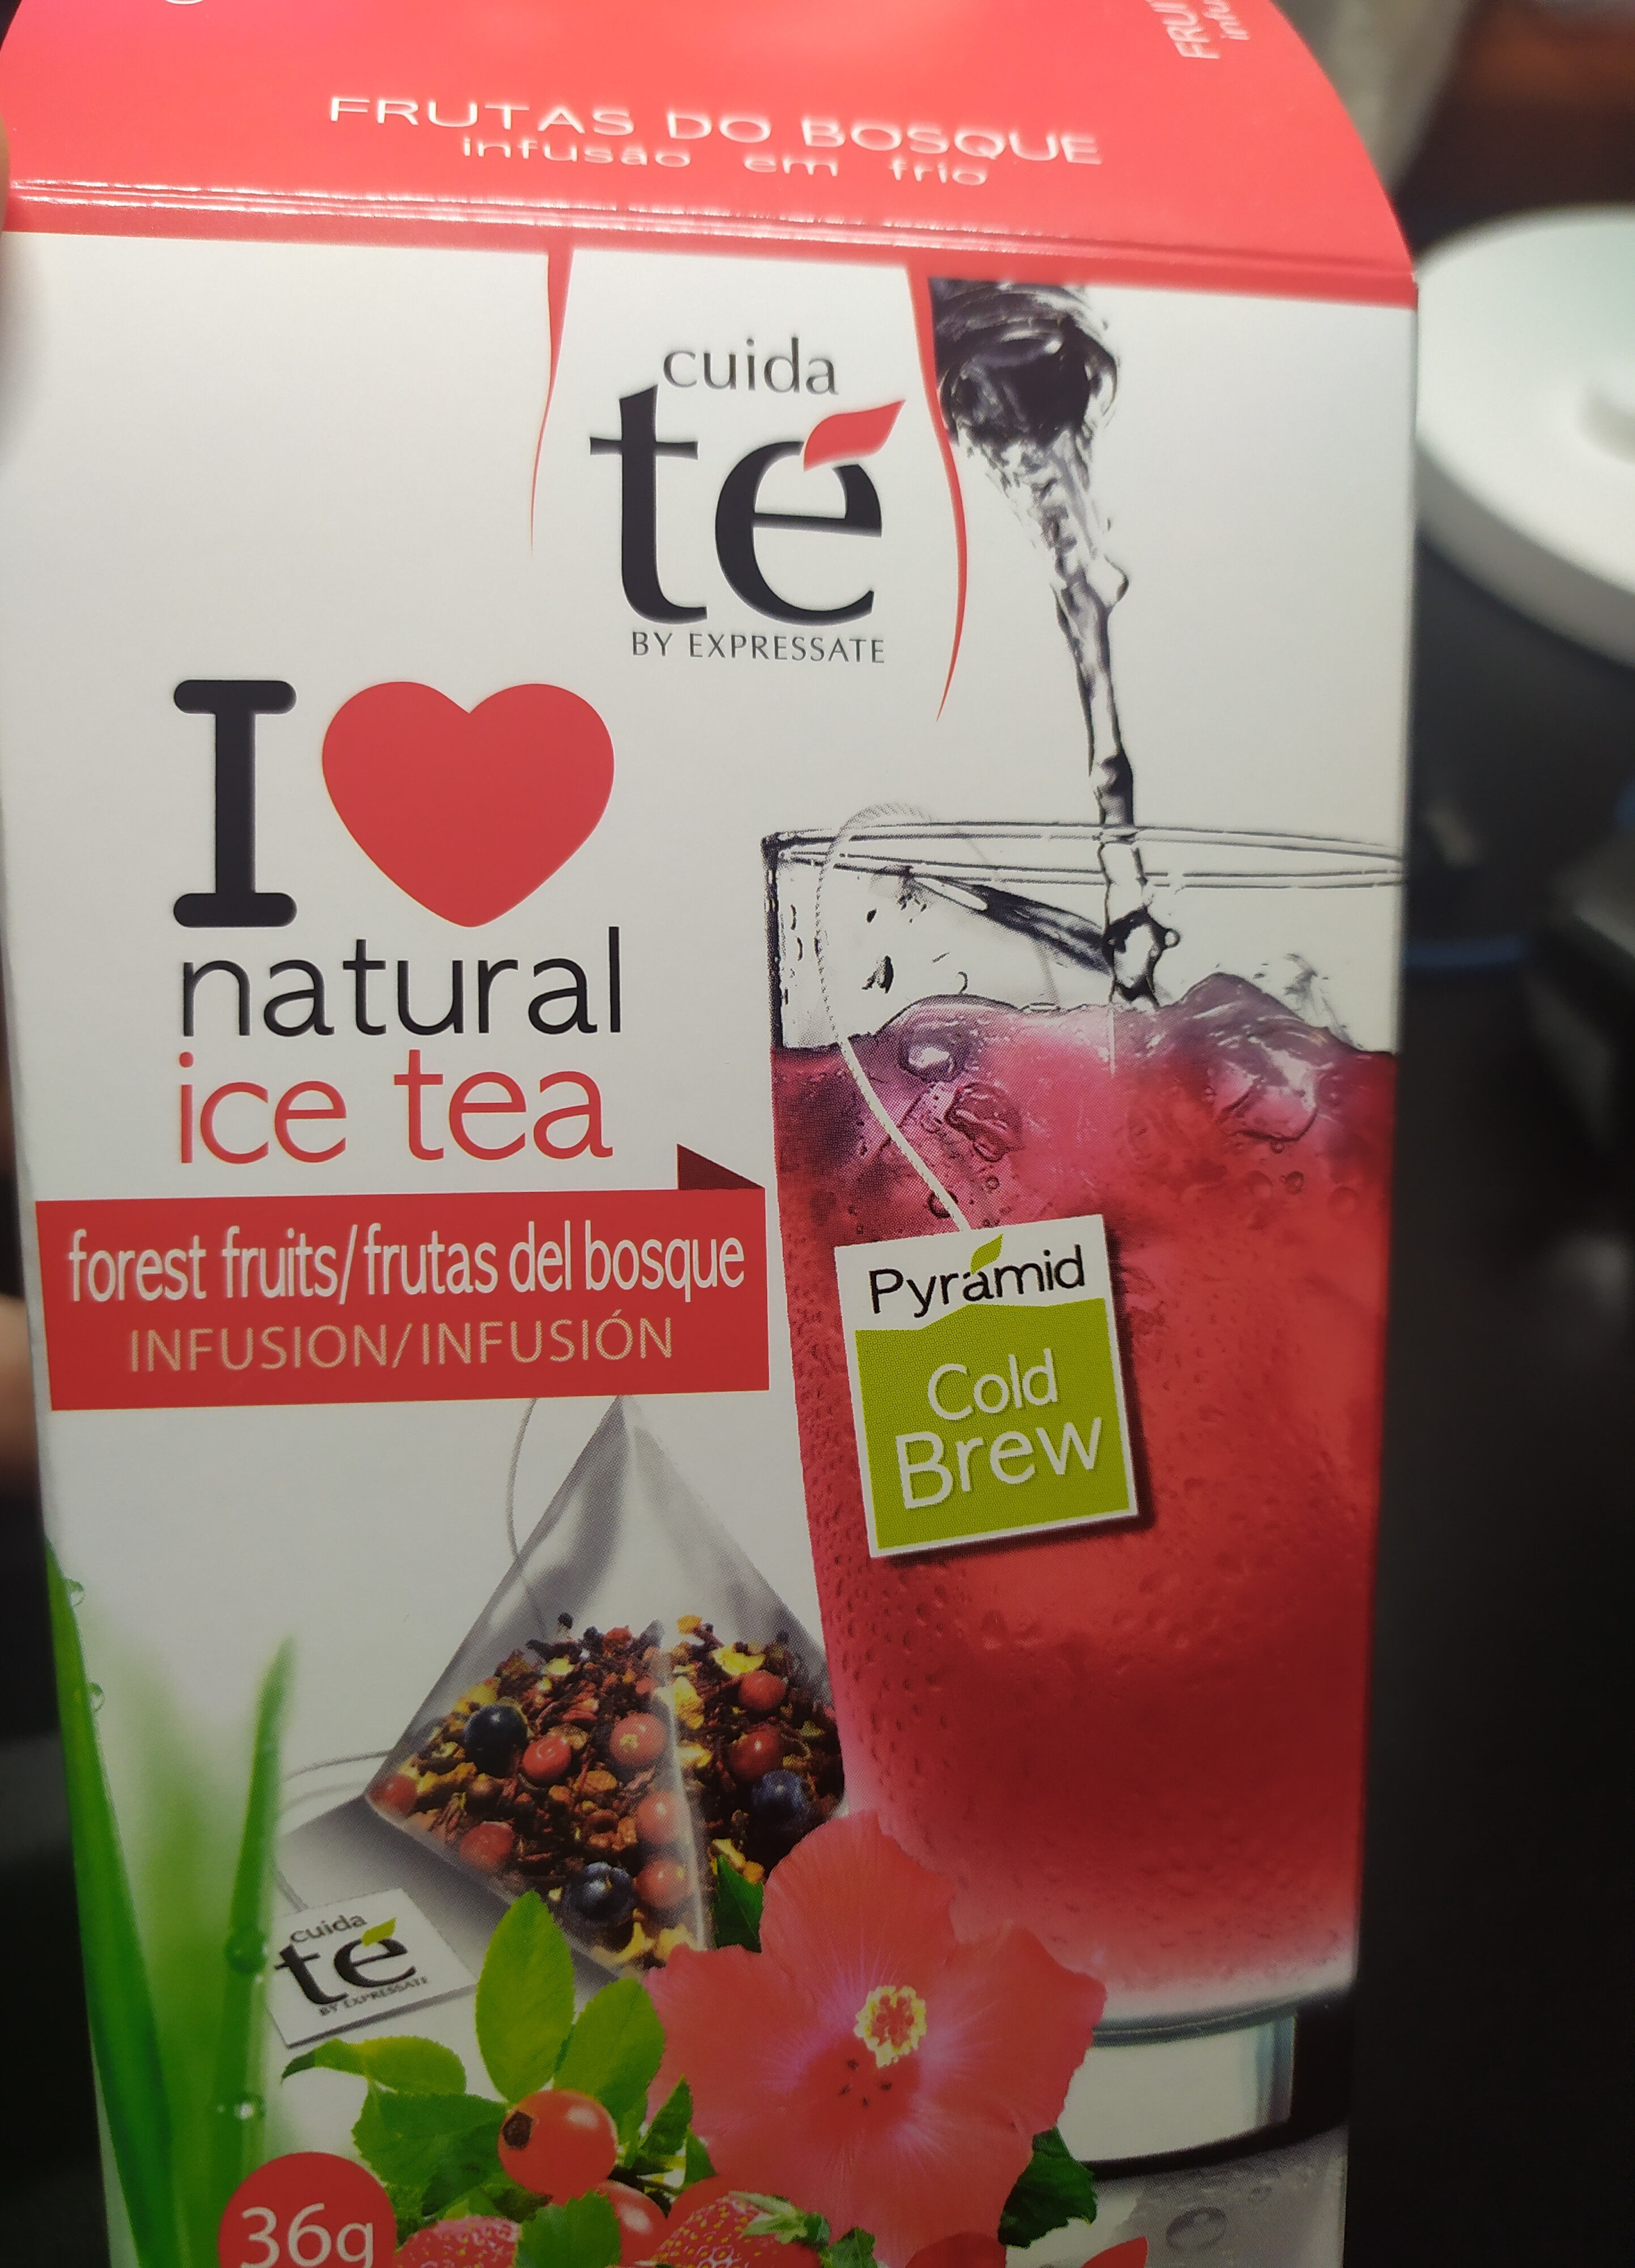 Ice tea frutas del bosque - Producte - es